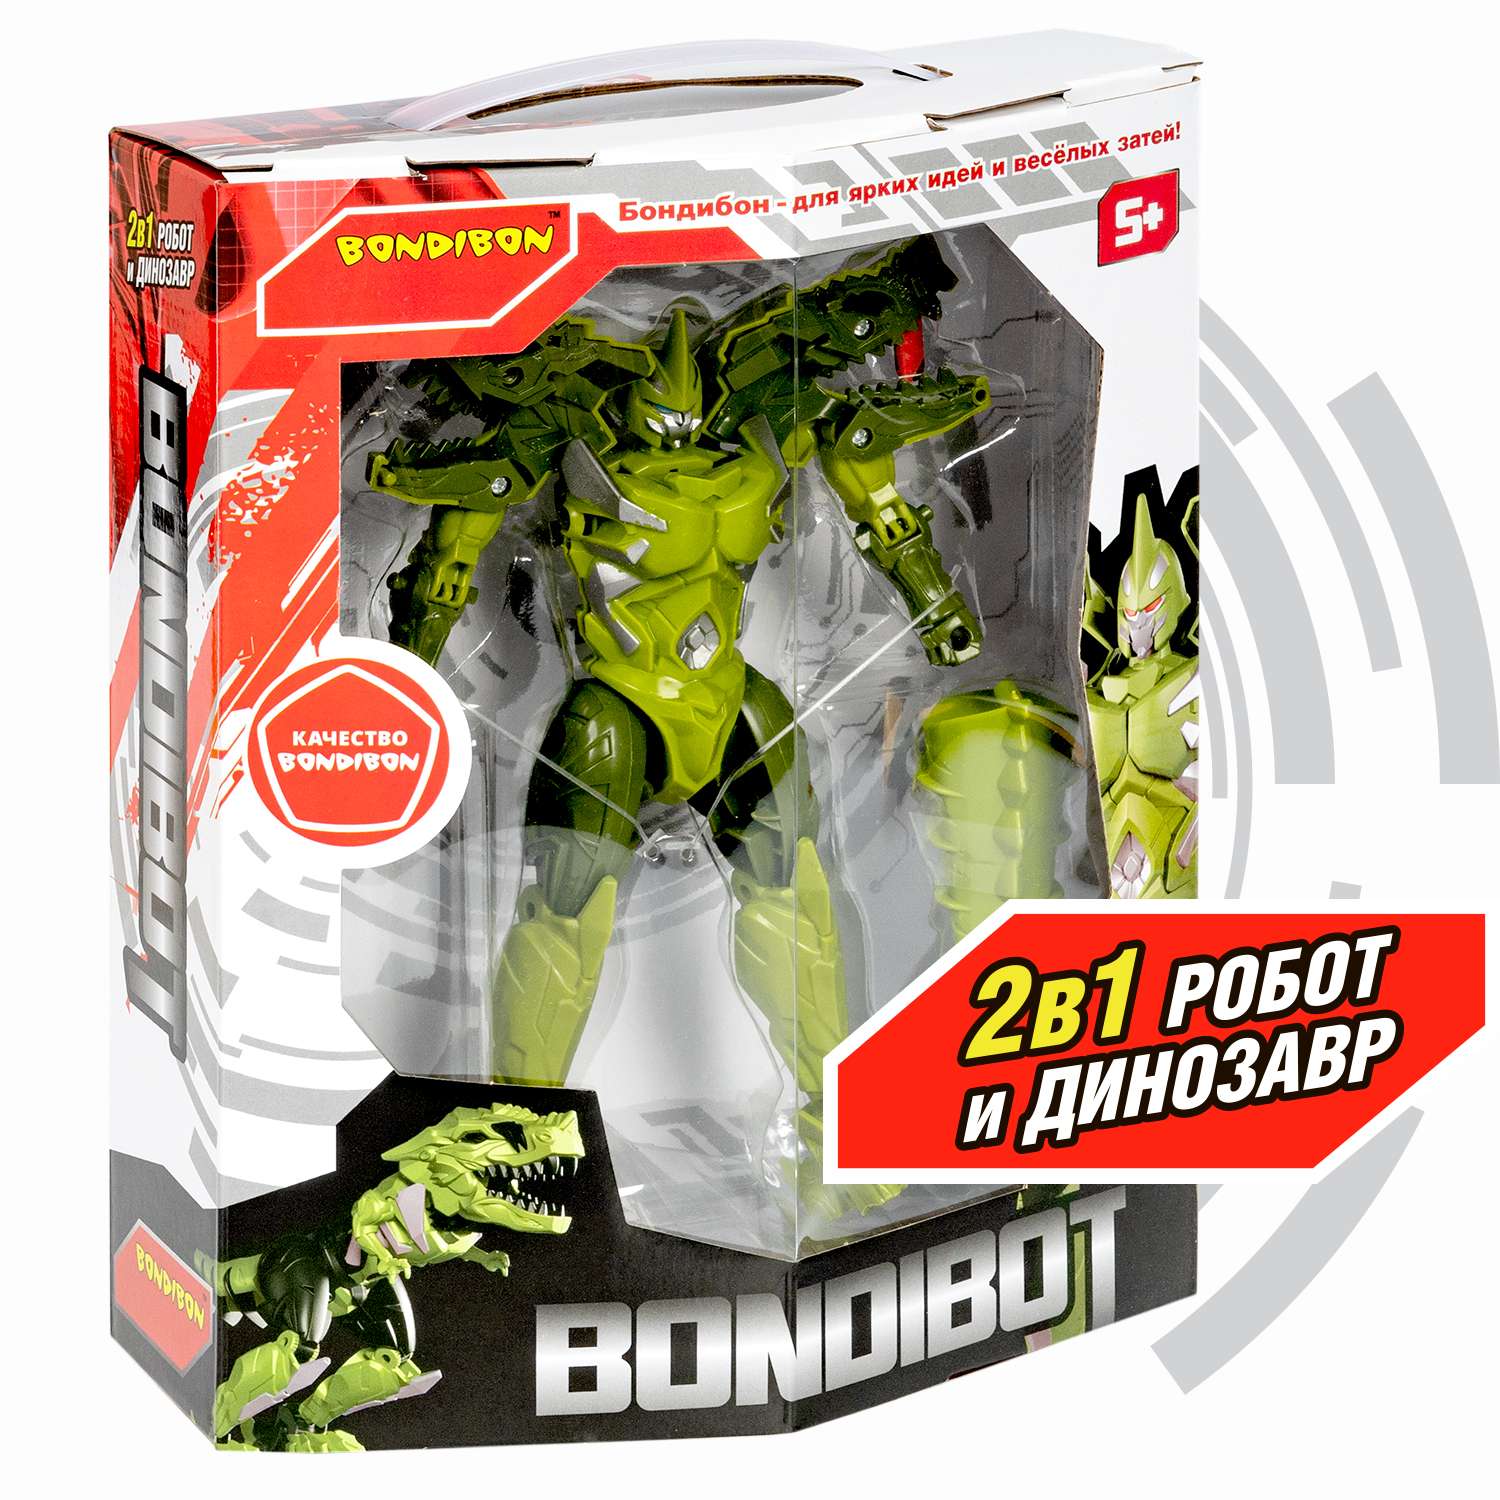 Трансформер BONDIBON Bondibot Робот-динозавр тираннозавр 2 в 1 зелёный цвета - фото 2